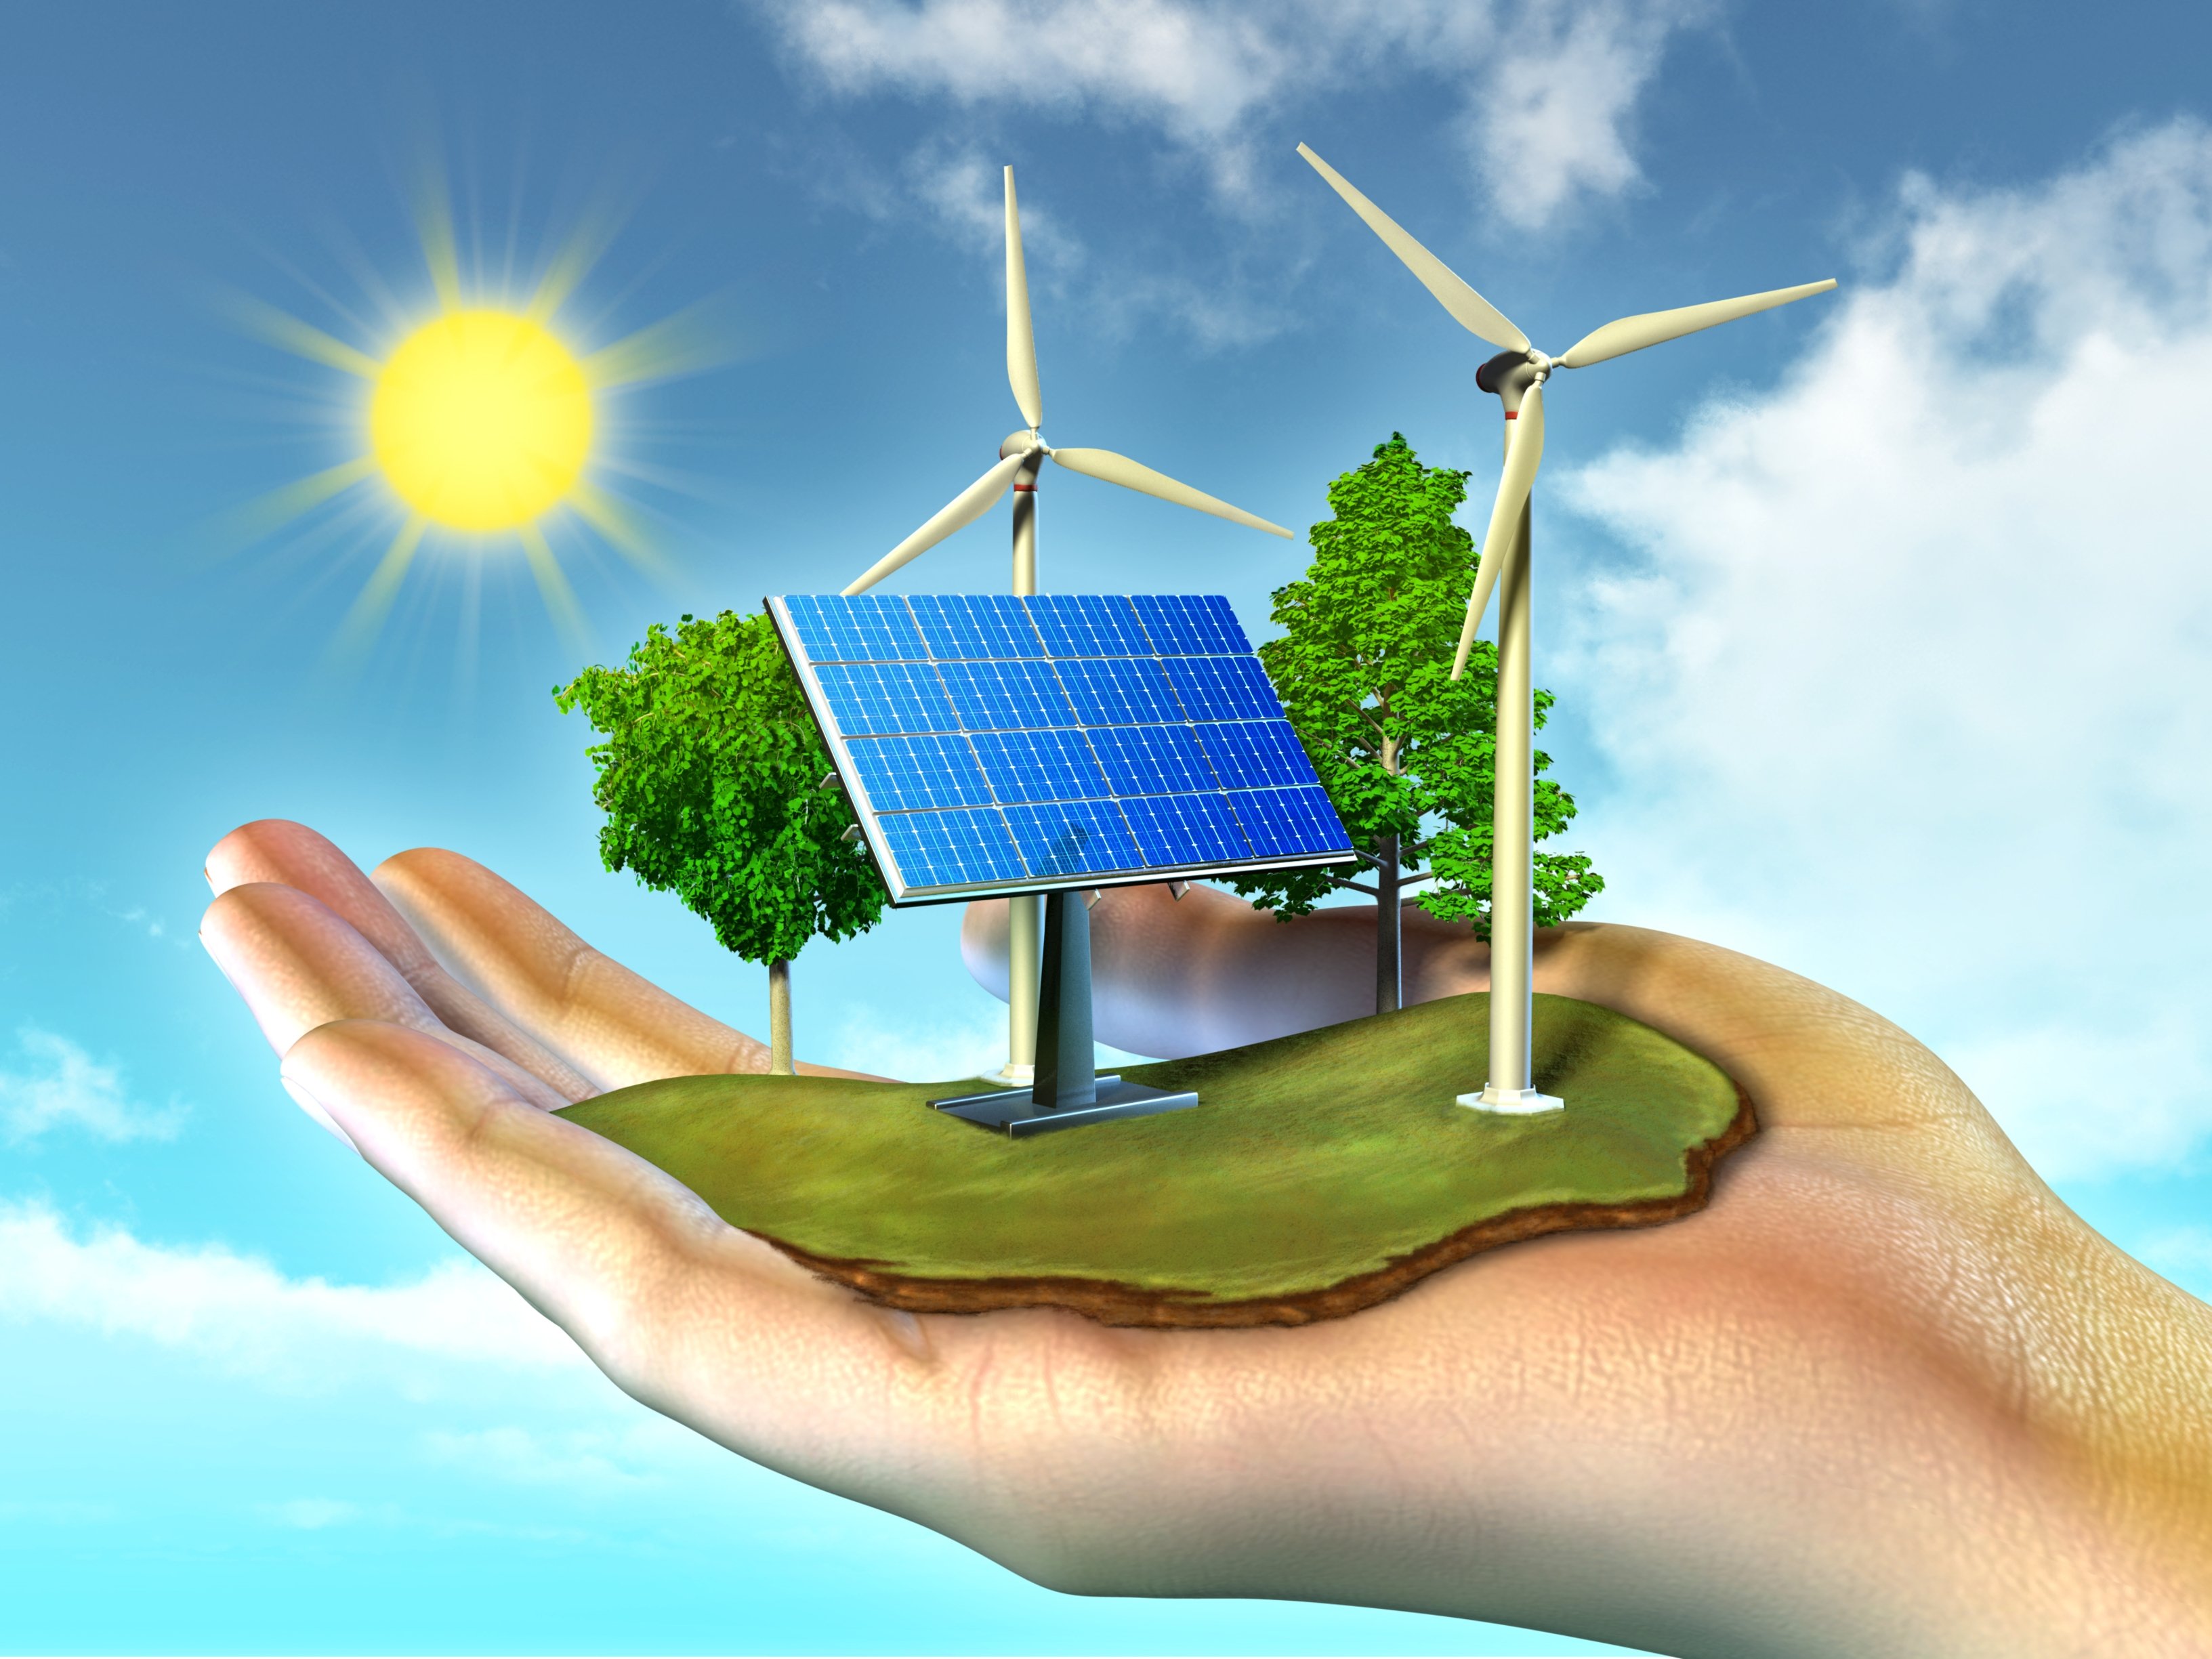 Природный потенциал системы. Солнечная энергия ВИЭ. Возобновляемые источники энергии (ВИЭ). Альтернативная Энергетика. Зеленая Энергетика.